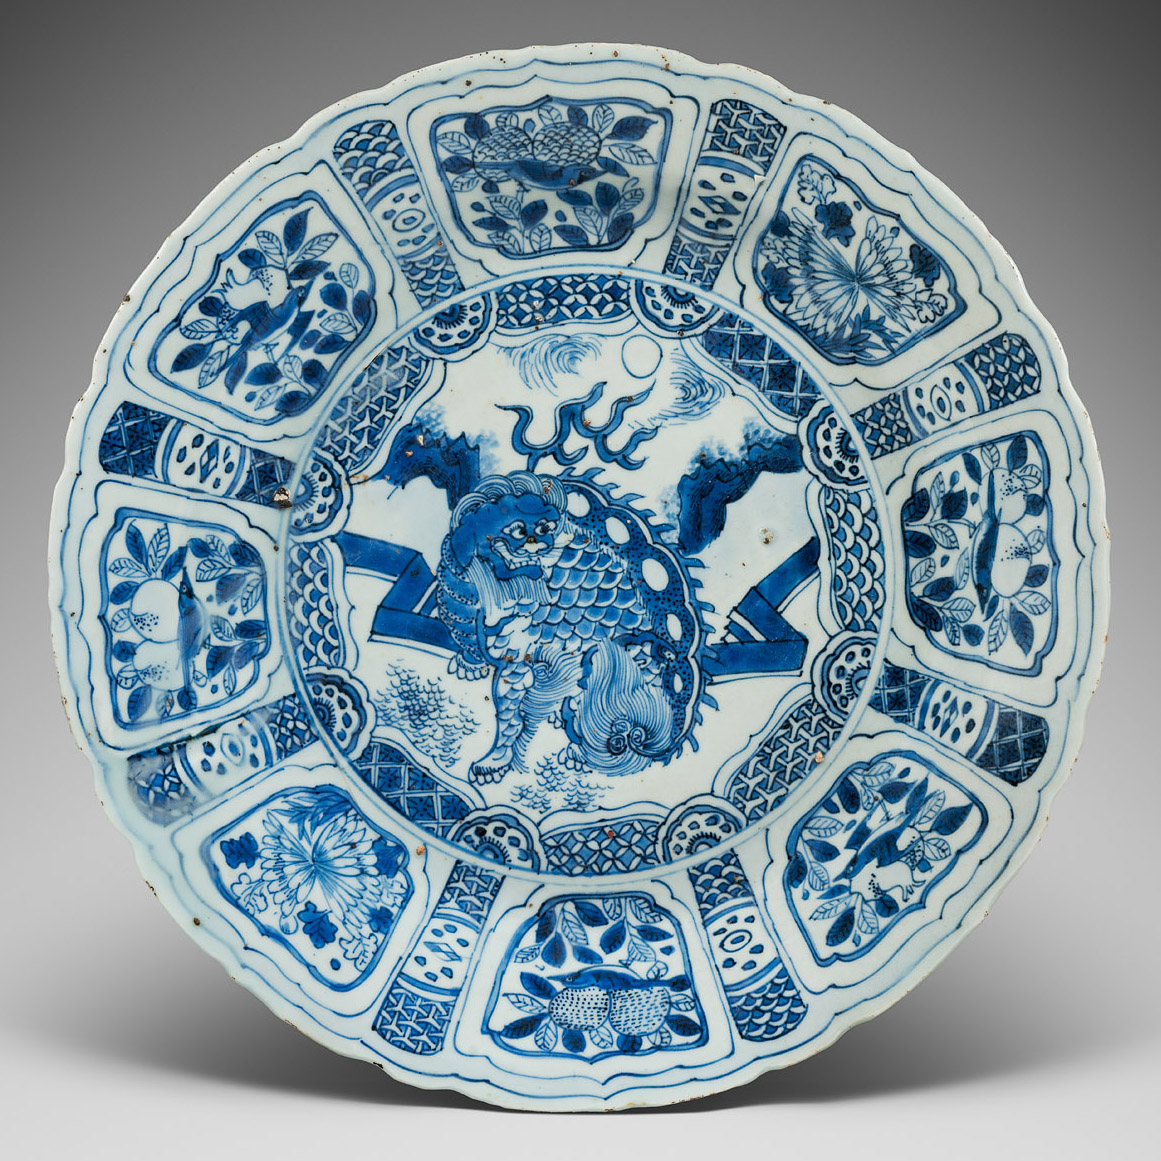 Porcelaine Fin de la dynastie Ming (1368-1644), ca 1610-1630, Chine